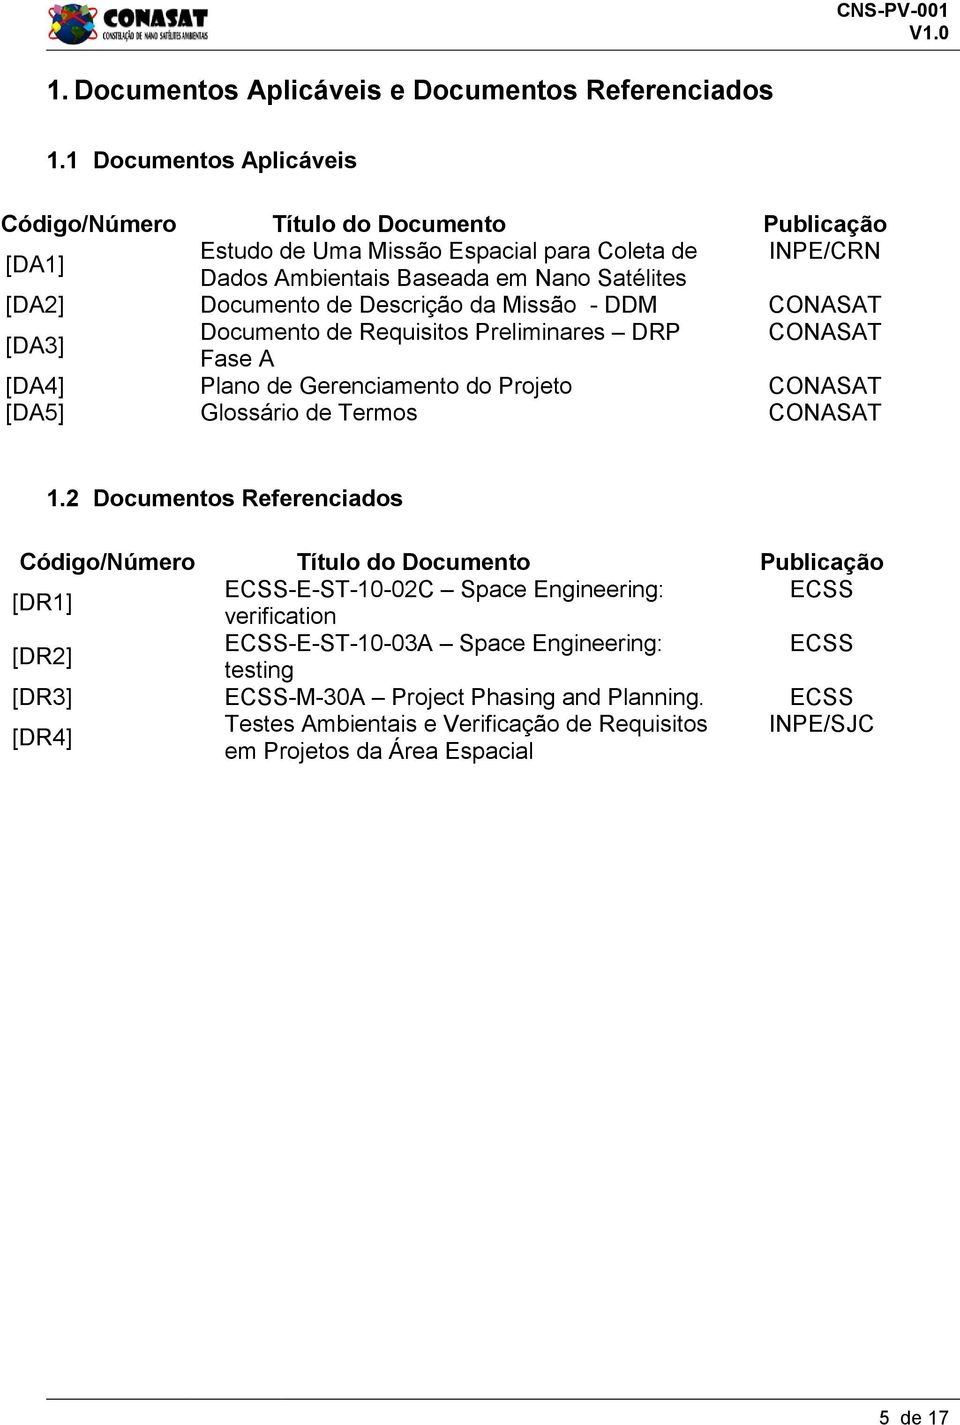 Descrição da Missão - DDM CONASAT [DA3] Documento de Requisitos Preliminares DRP CONASAT Fase A [DA4] Plano de Gerenciamento do Projeto CONASAT [DA5] Glossário de Termos CONASAT 1.